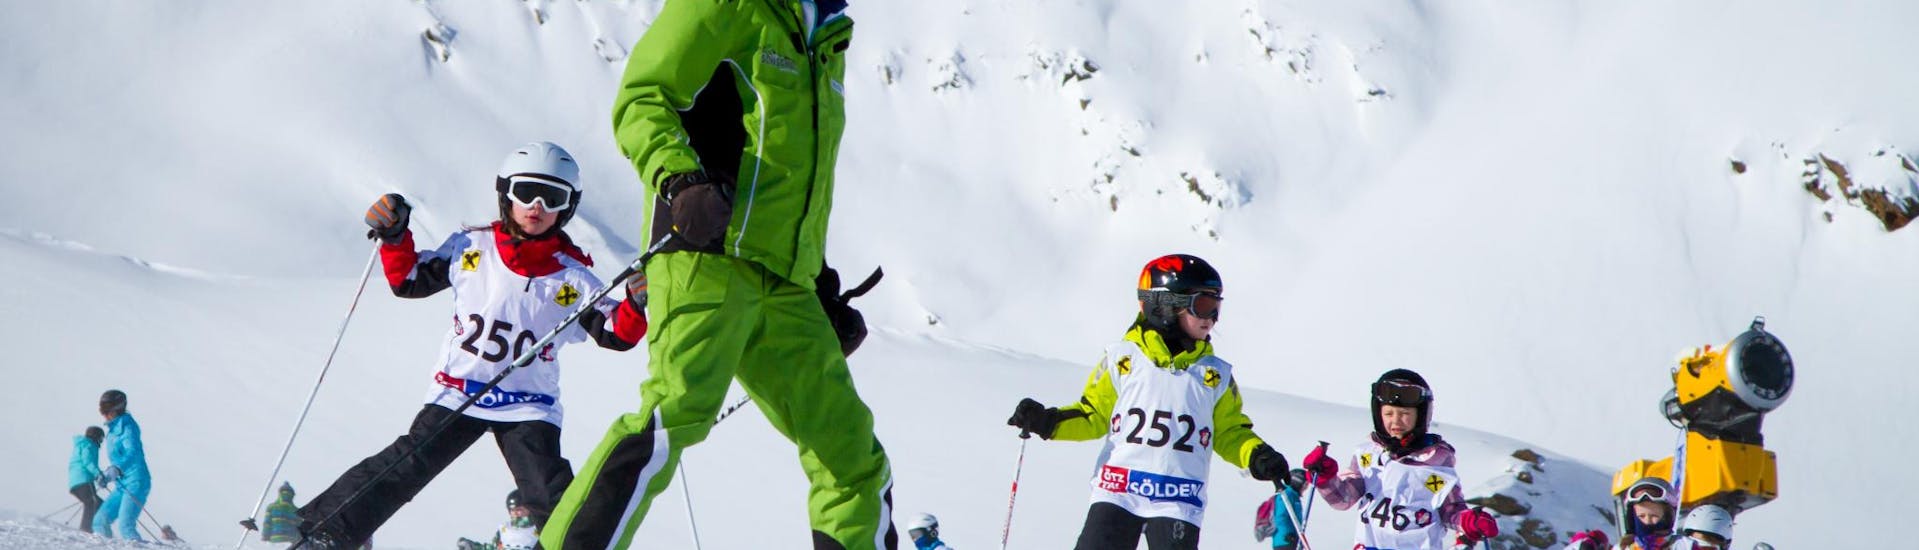 Clases de esquí para niños a partir de 4 años para todos los niveles.